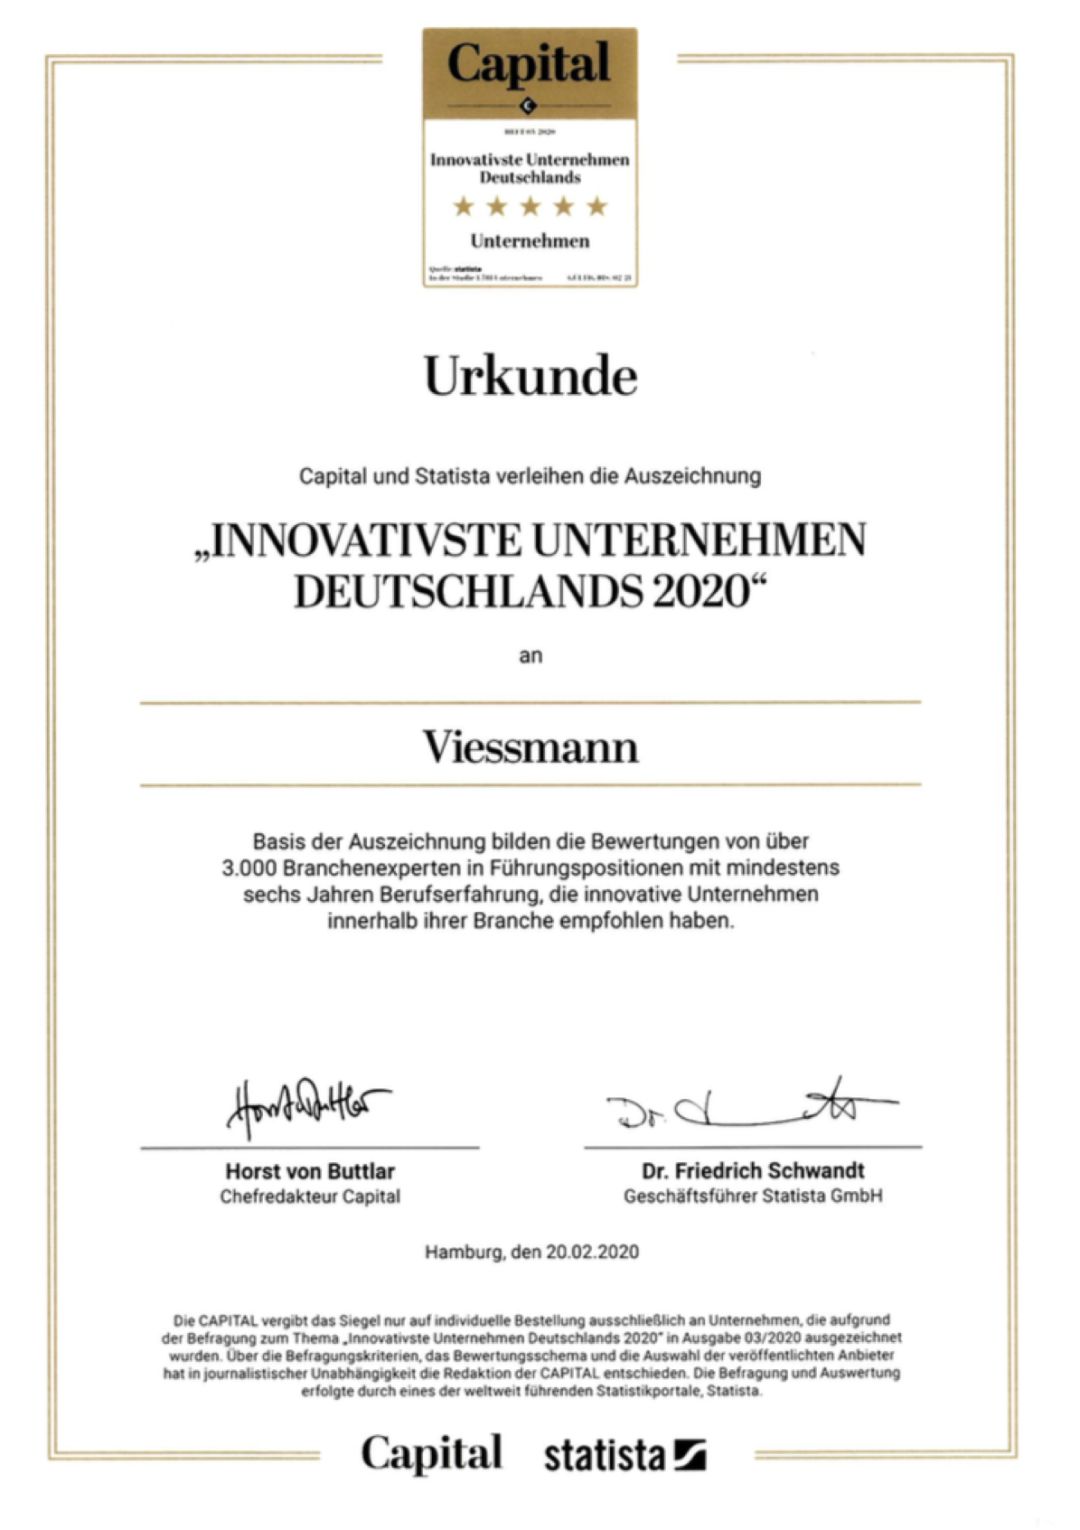 2020年，Viessmann再次荣获两项大奖